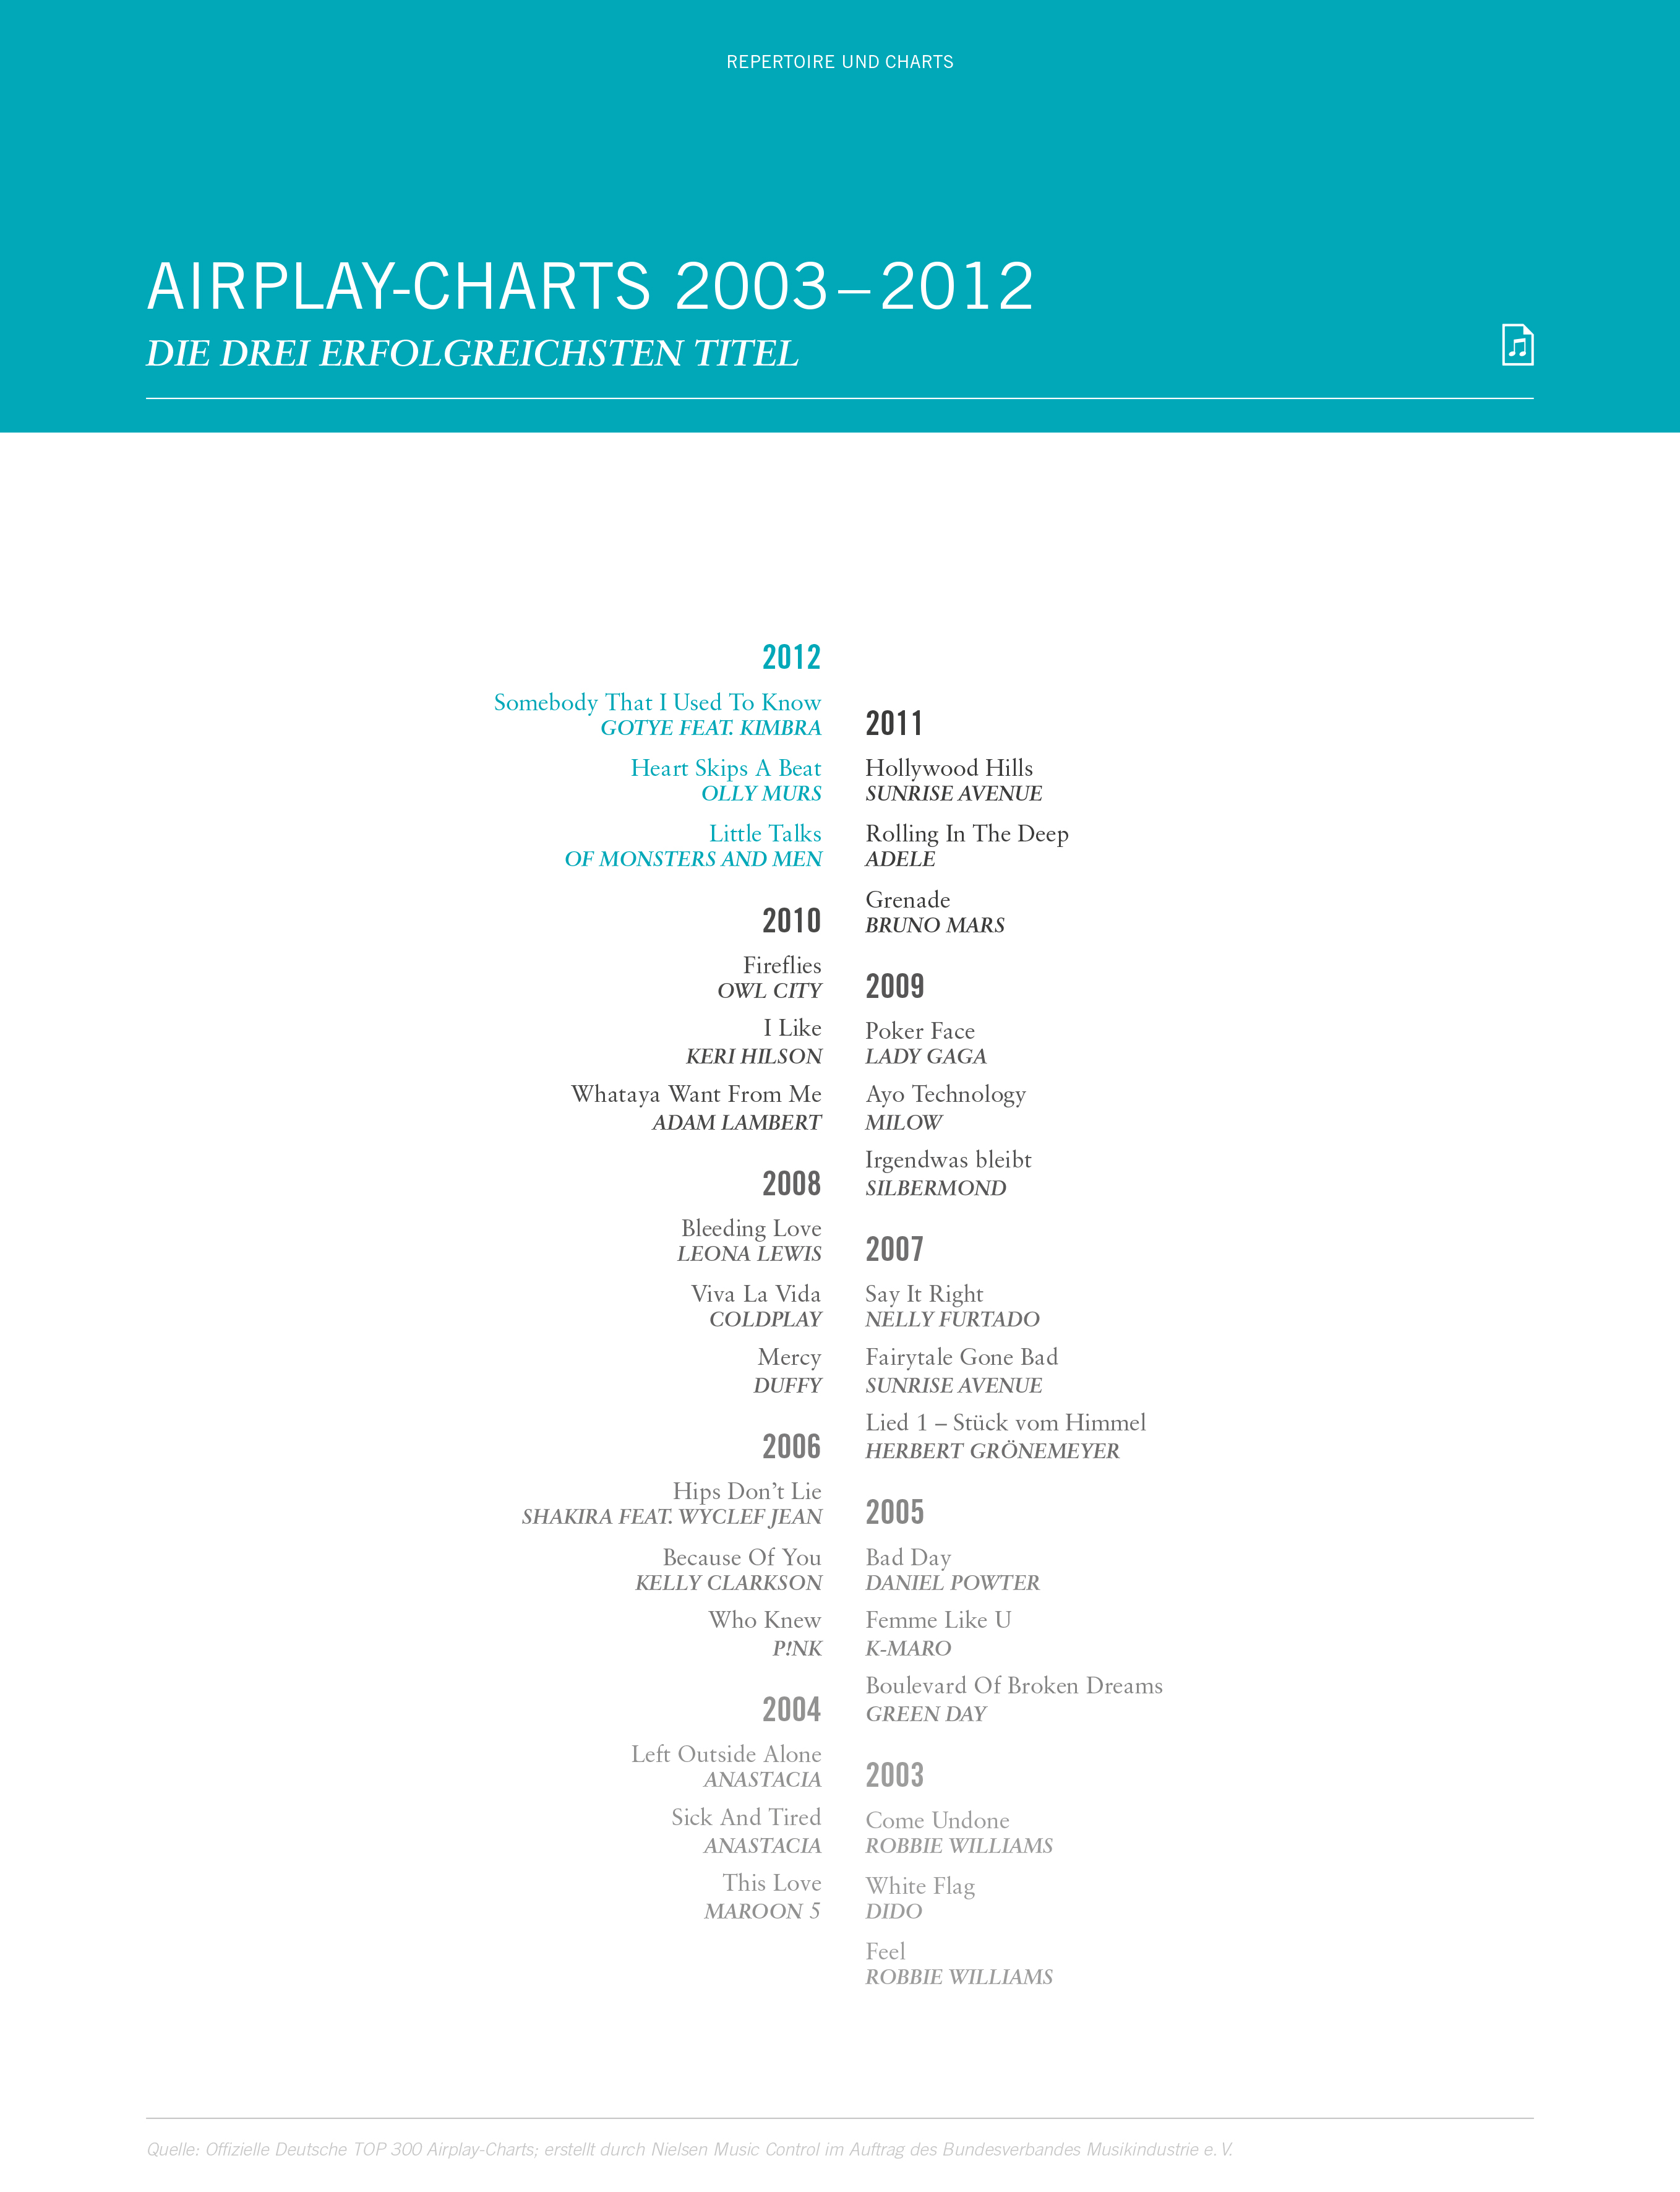 Airplay Charts Deutschland